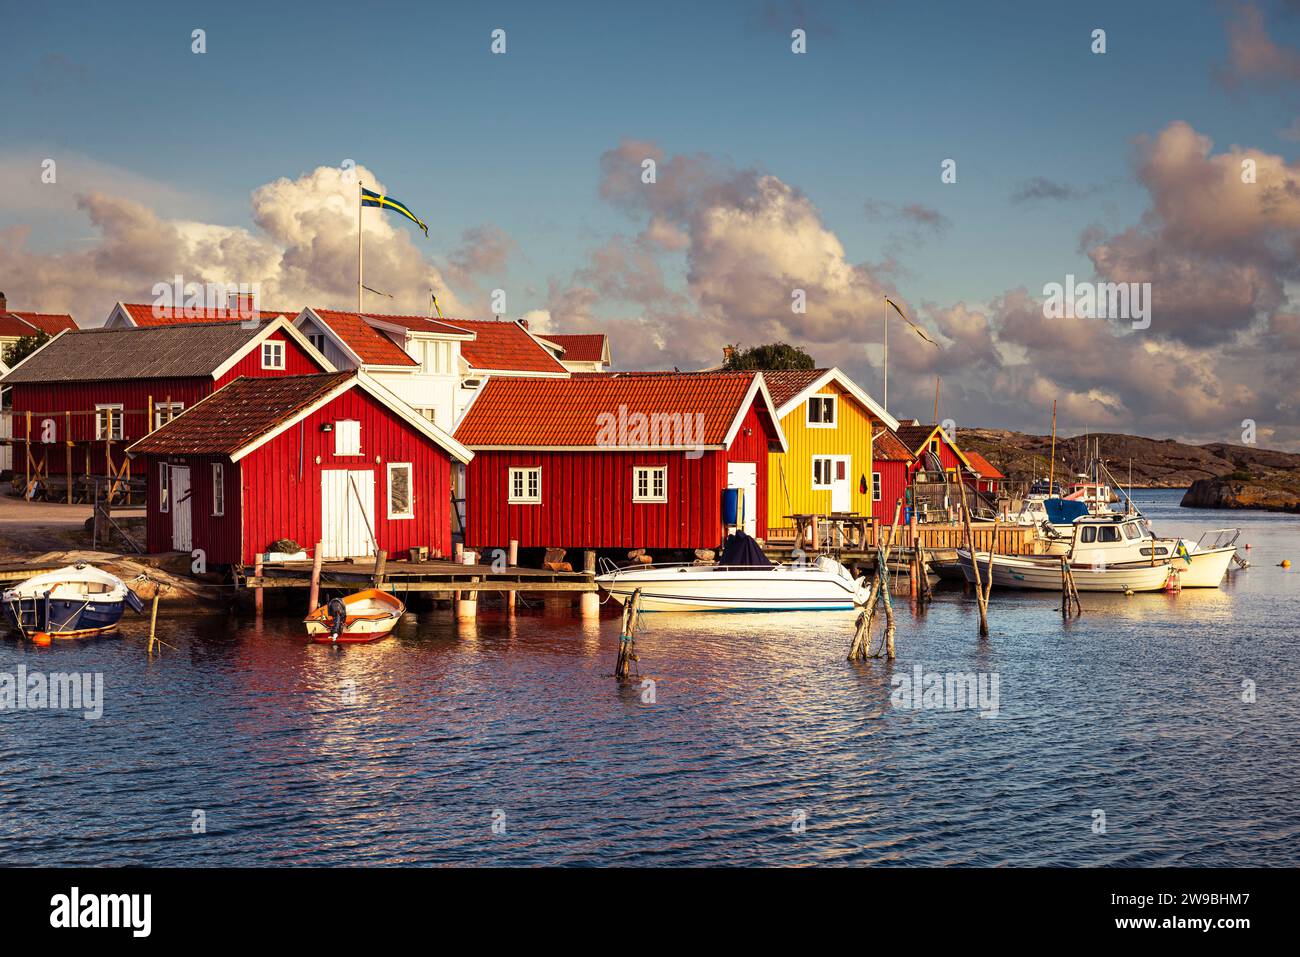 Sorge il sole sulle colorate case di legno nel porto di Björholmen sull'isola di Tjörn, nell'arcipelago della costa occidentale della Svezia Foto Stock